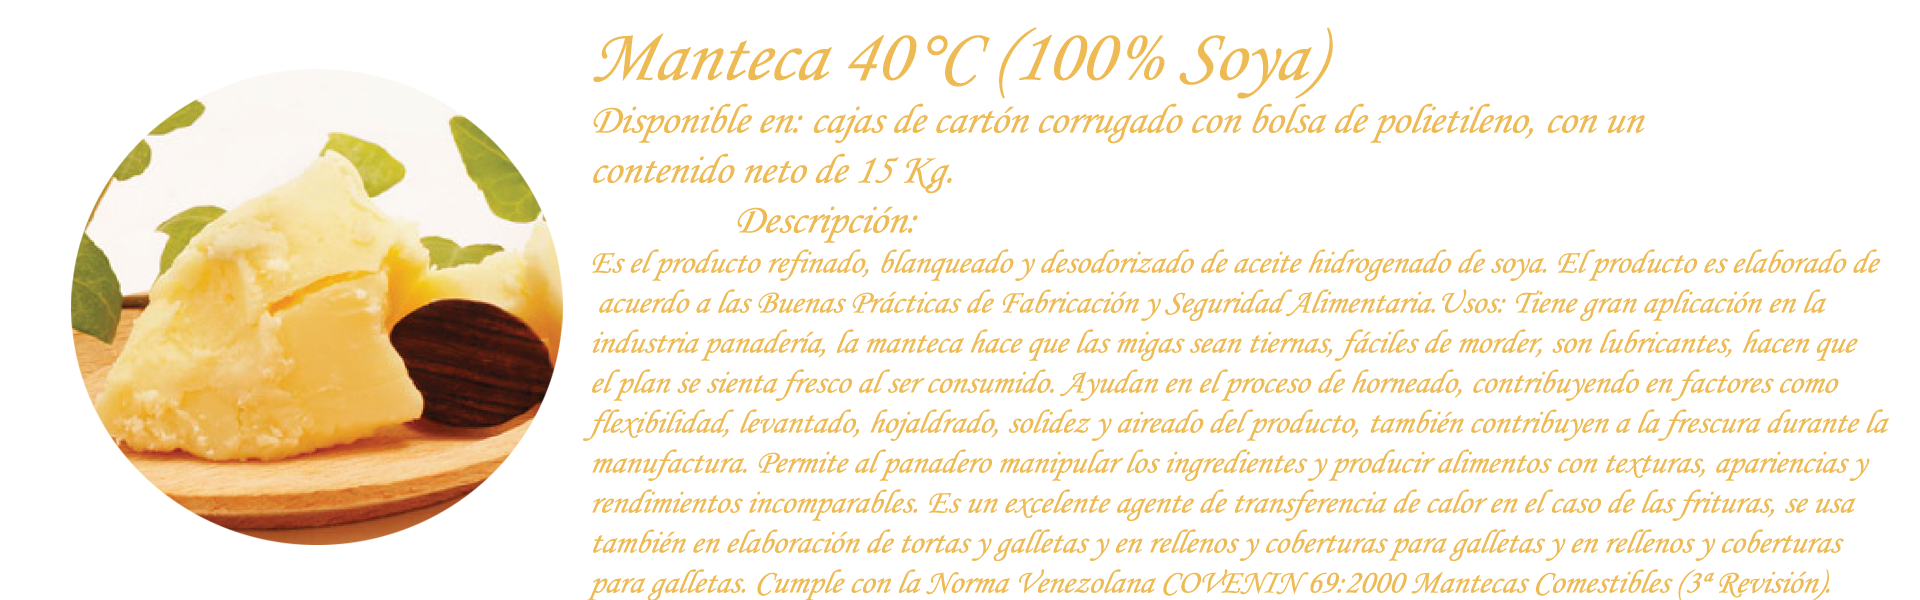 Manteca 40°C (100% Soya)